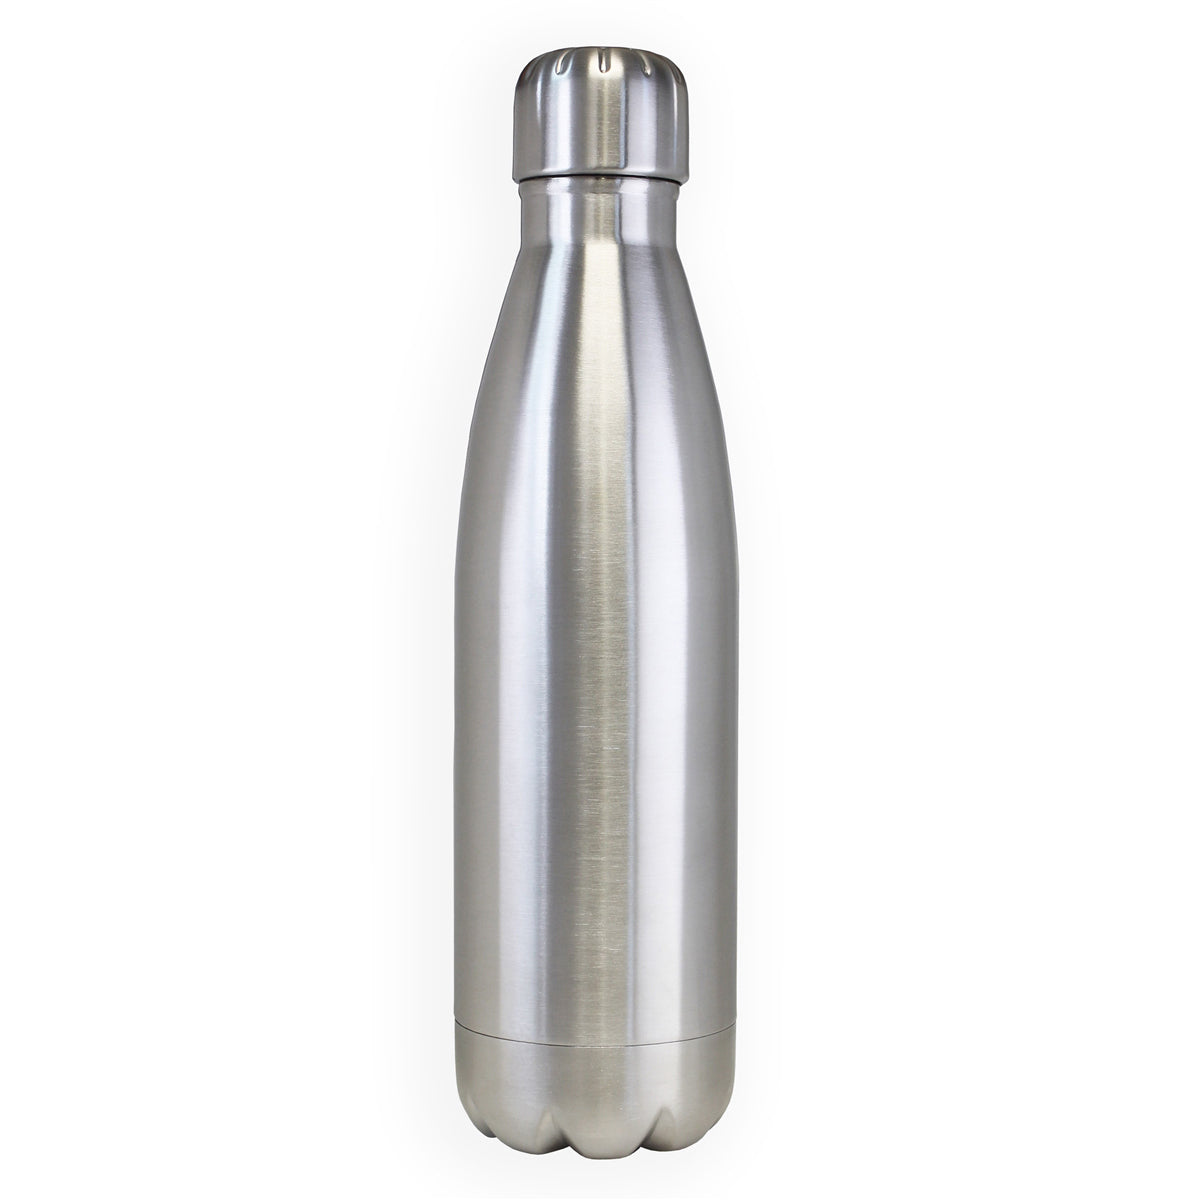 Black Metal Water Bottle - BPA Free Stainless Steel